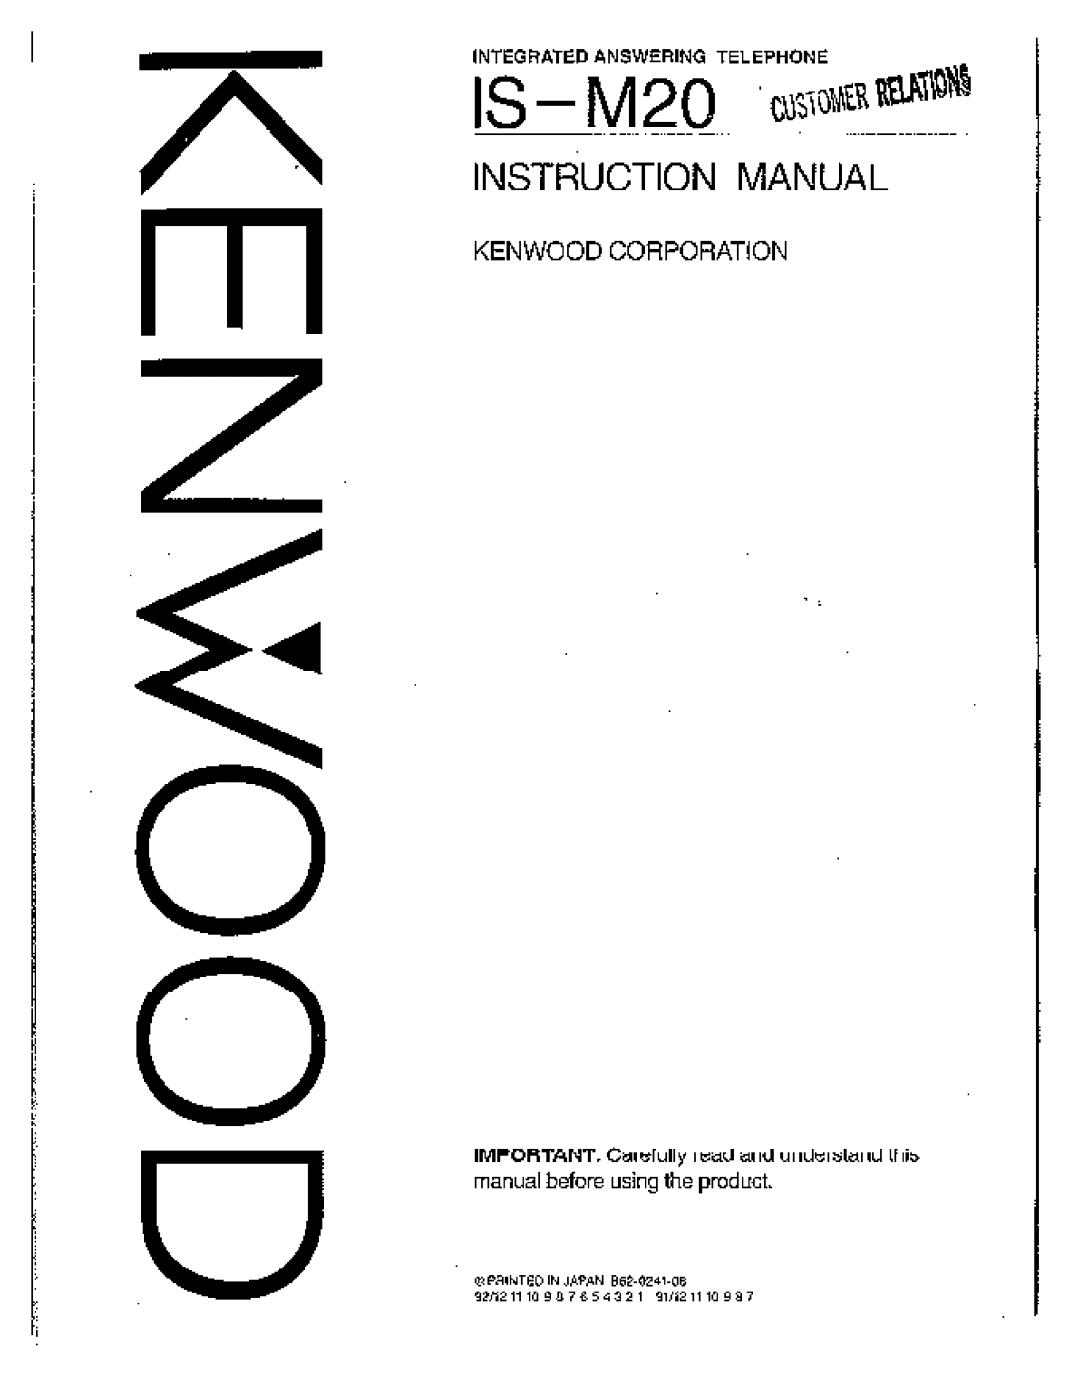 Kenwood Answering Machine, IS-M20, 6 manual 